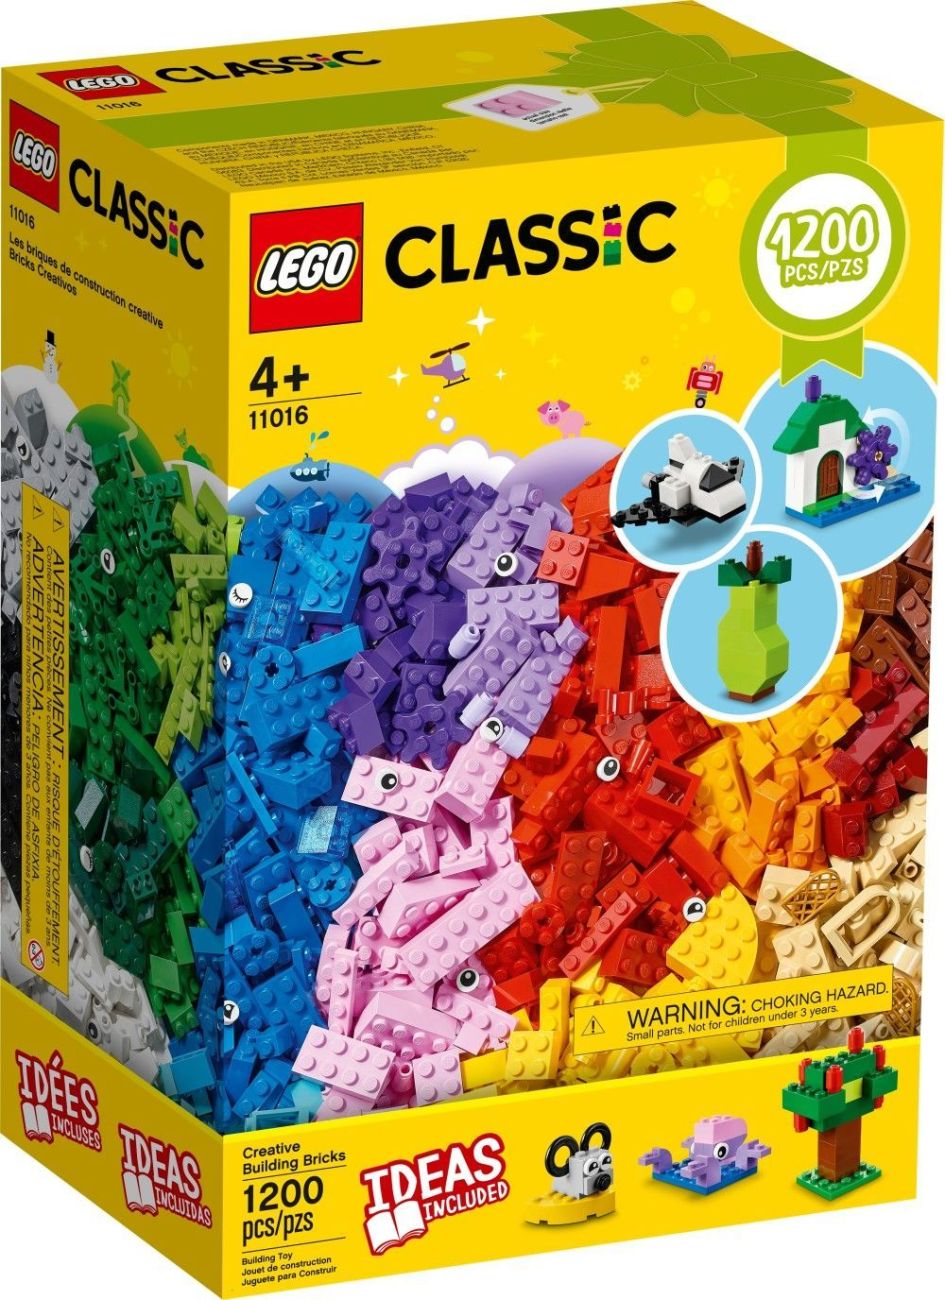 Alle LEGO Neuheiten 2021 im Überblick